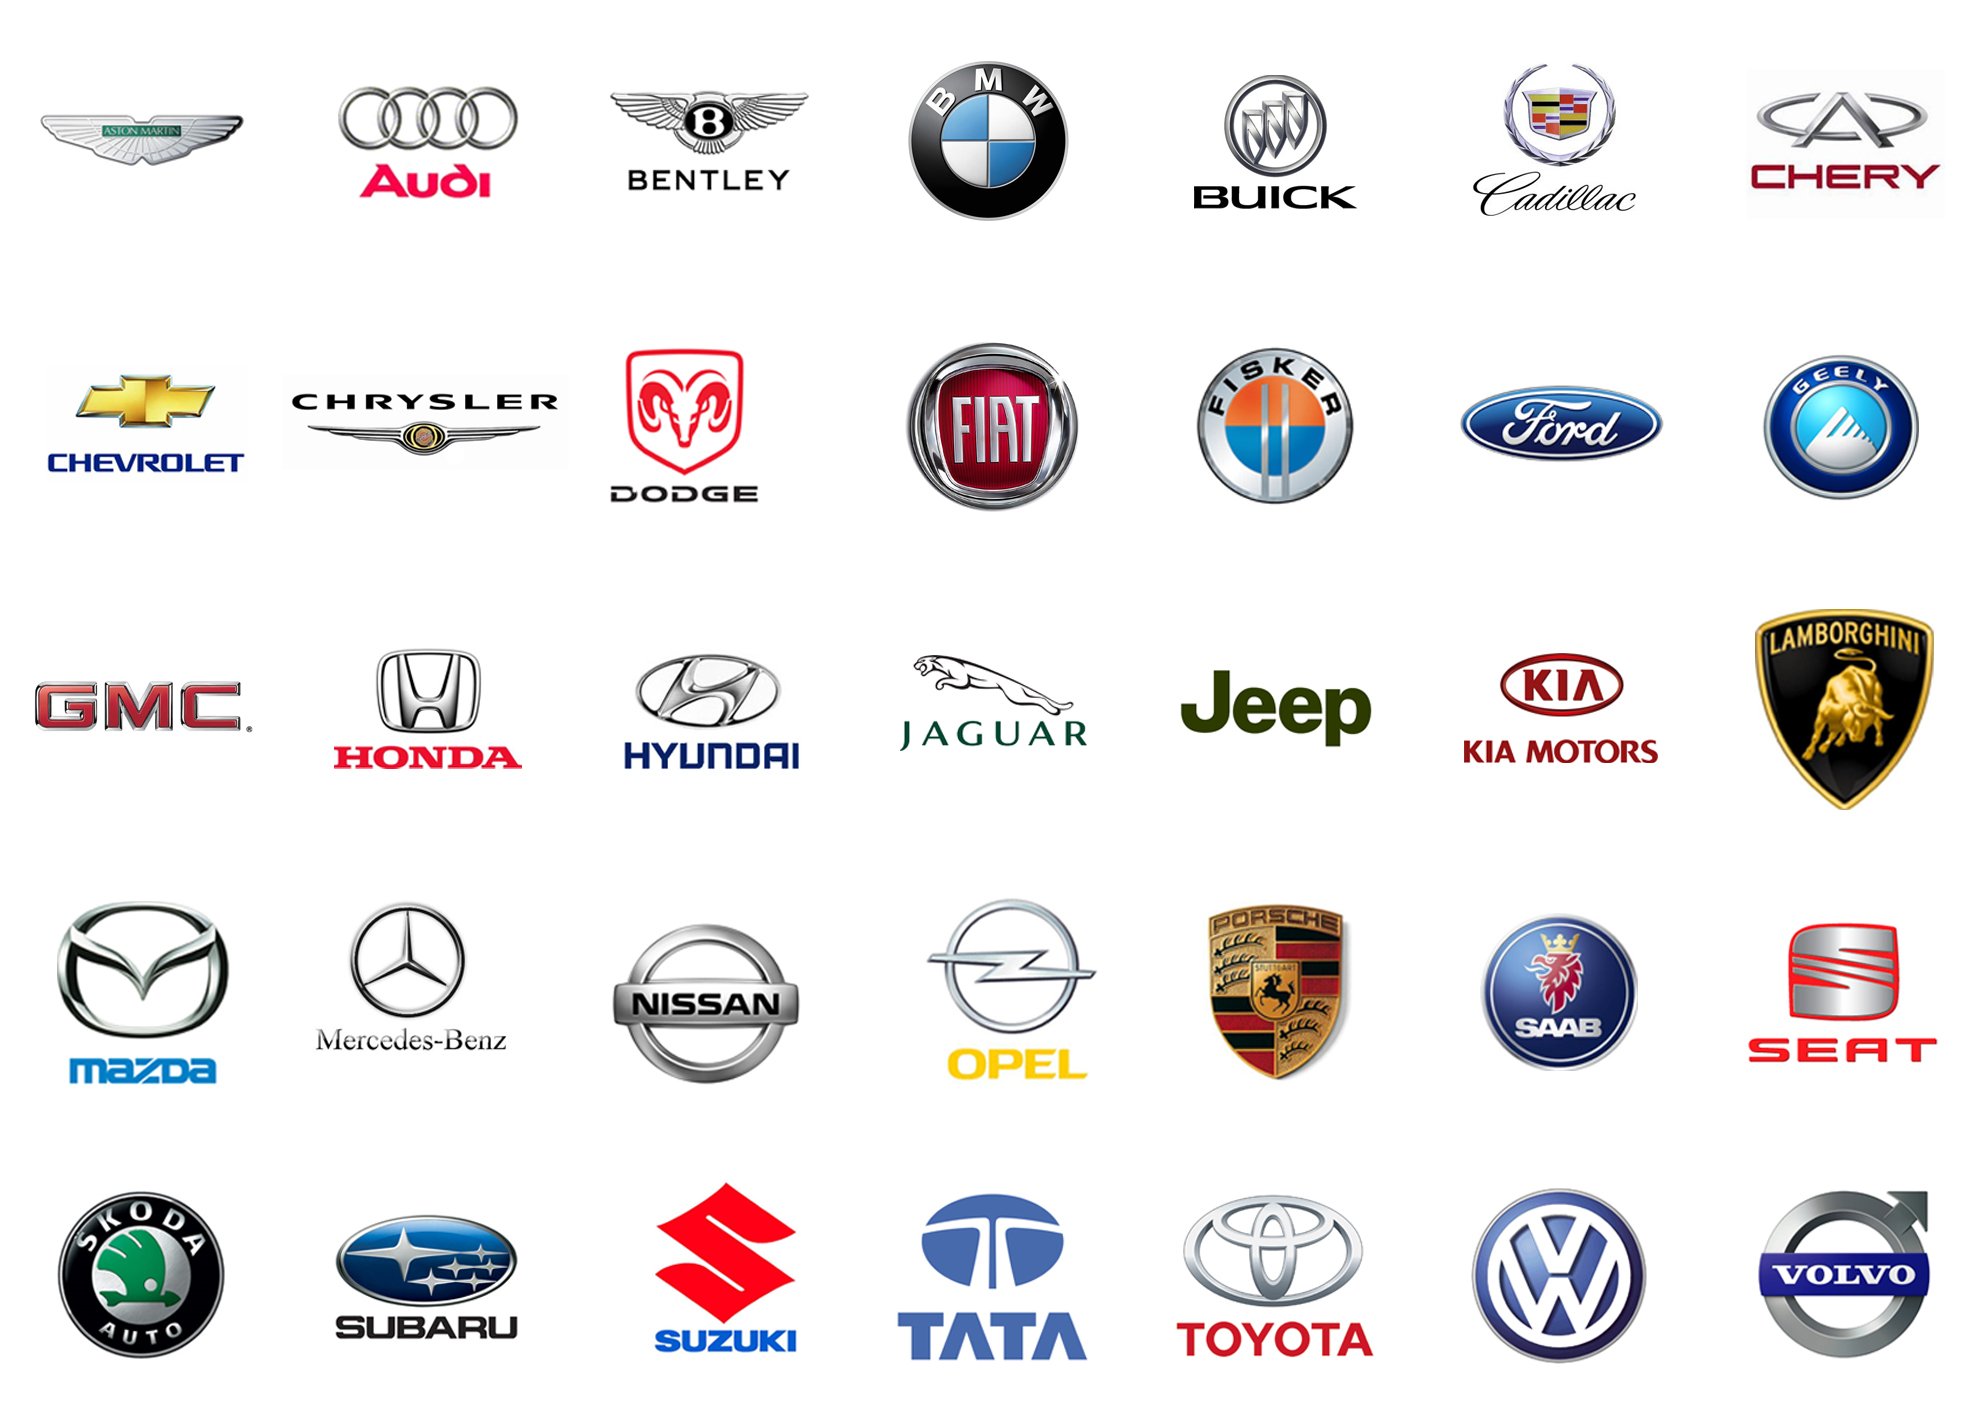 Фирмы производителей автомобилей. Значки автомобилей. Марки автомобилей. Эмблемы автомобилей всех марок. Марки автомобилей со значками.